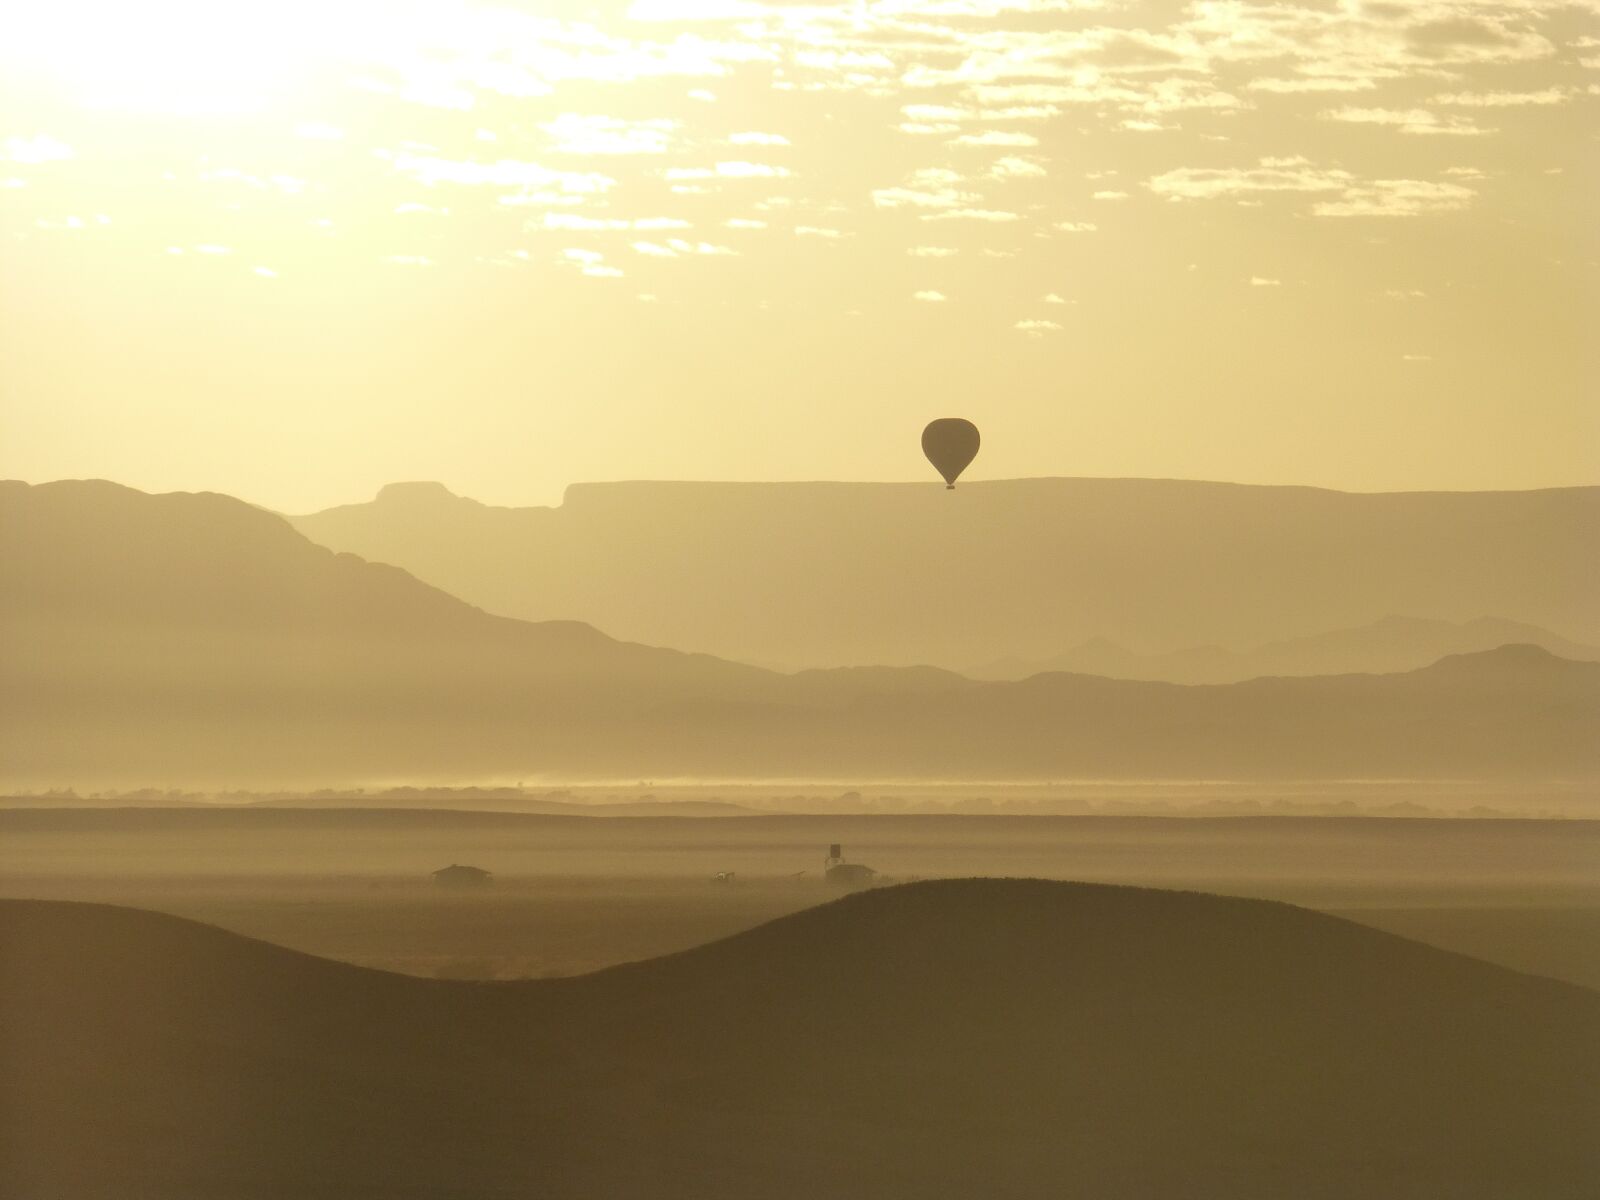 Panasonic Lumix DMC-ZS20 (Lumix DMC-TZ30) sample photo. Namibia, sunrise, landscape photography